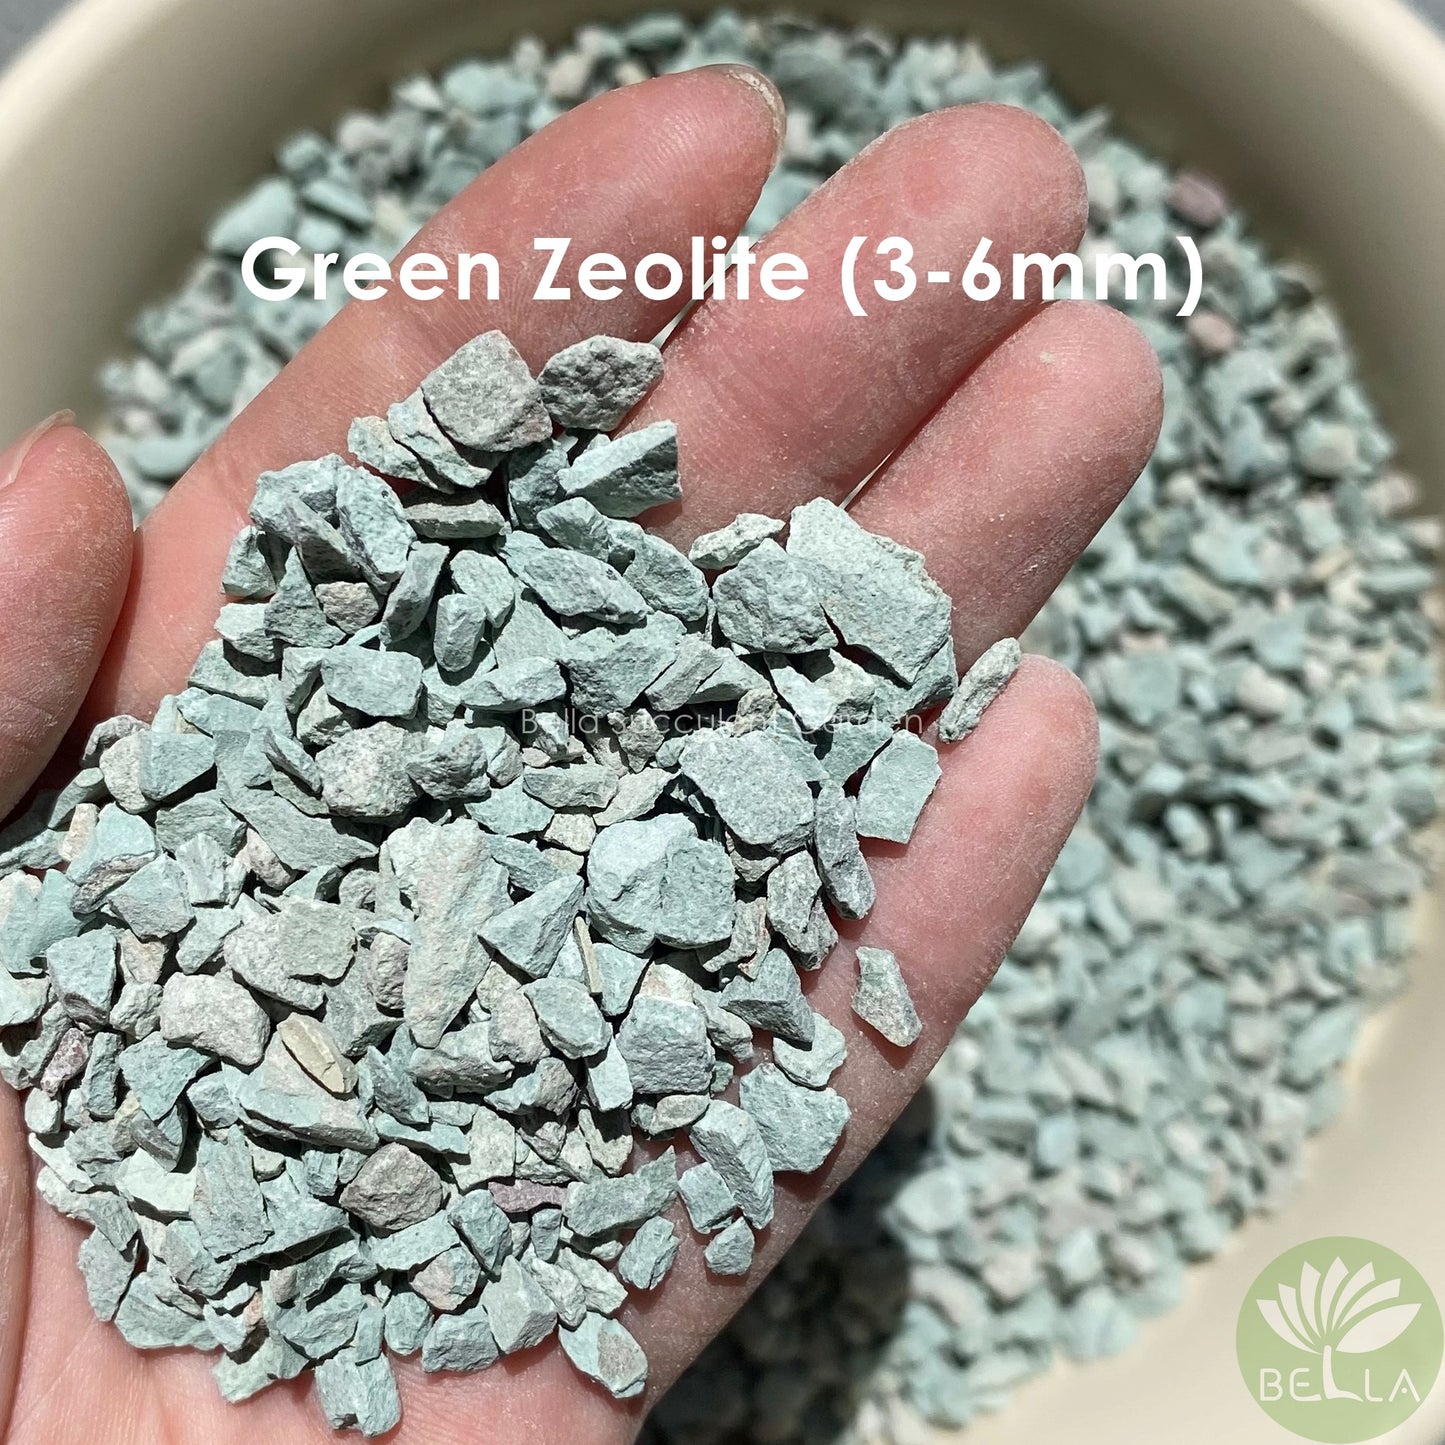 Green Zeolite